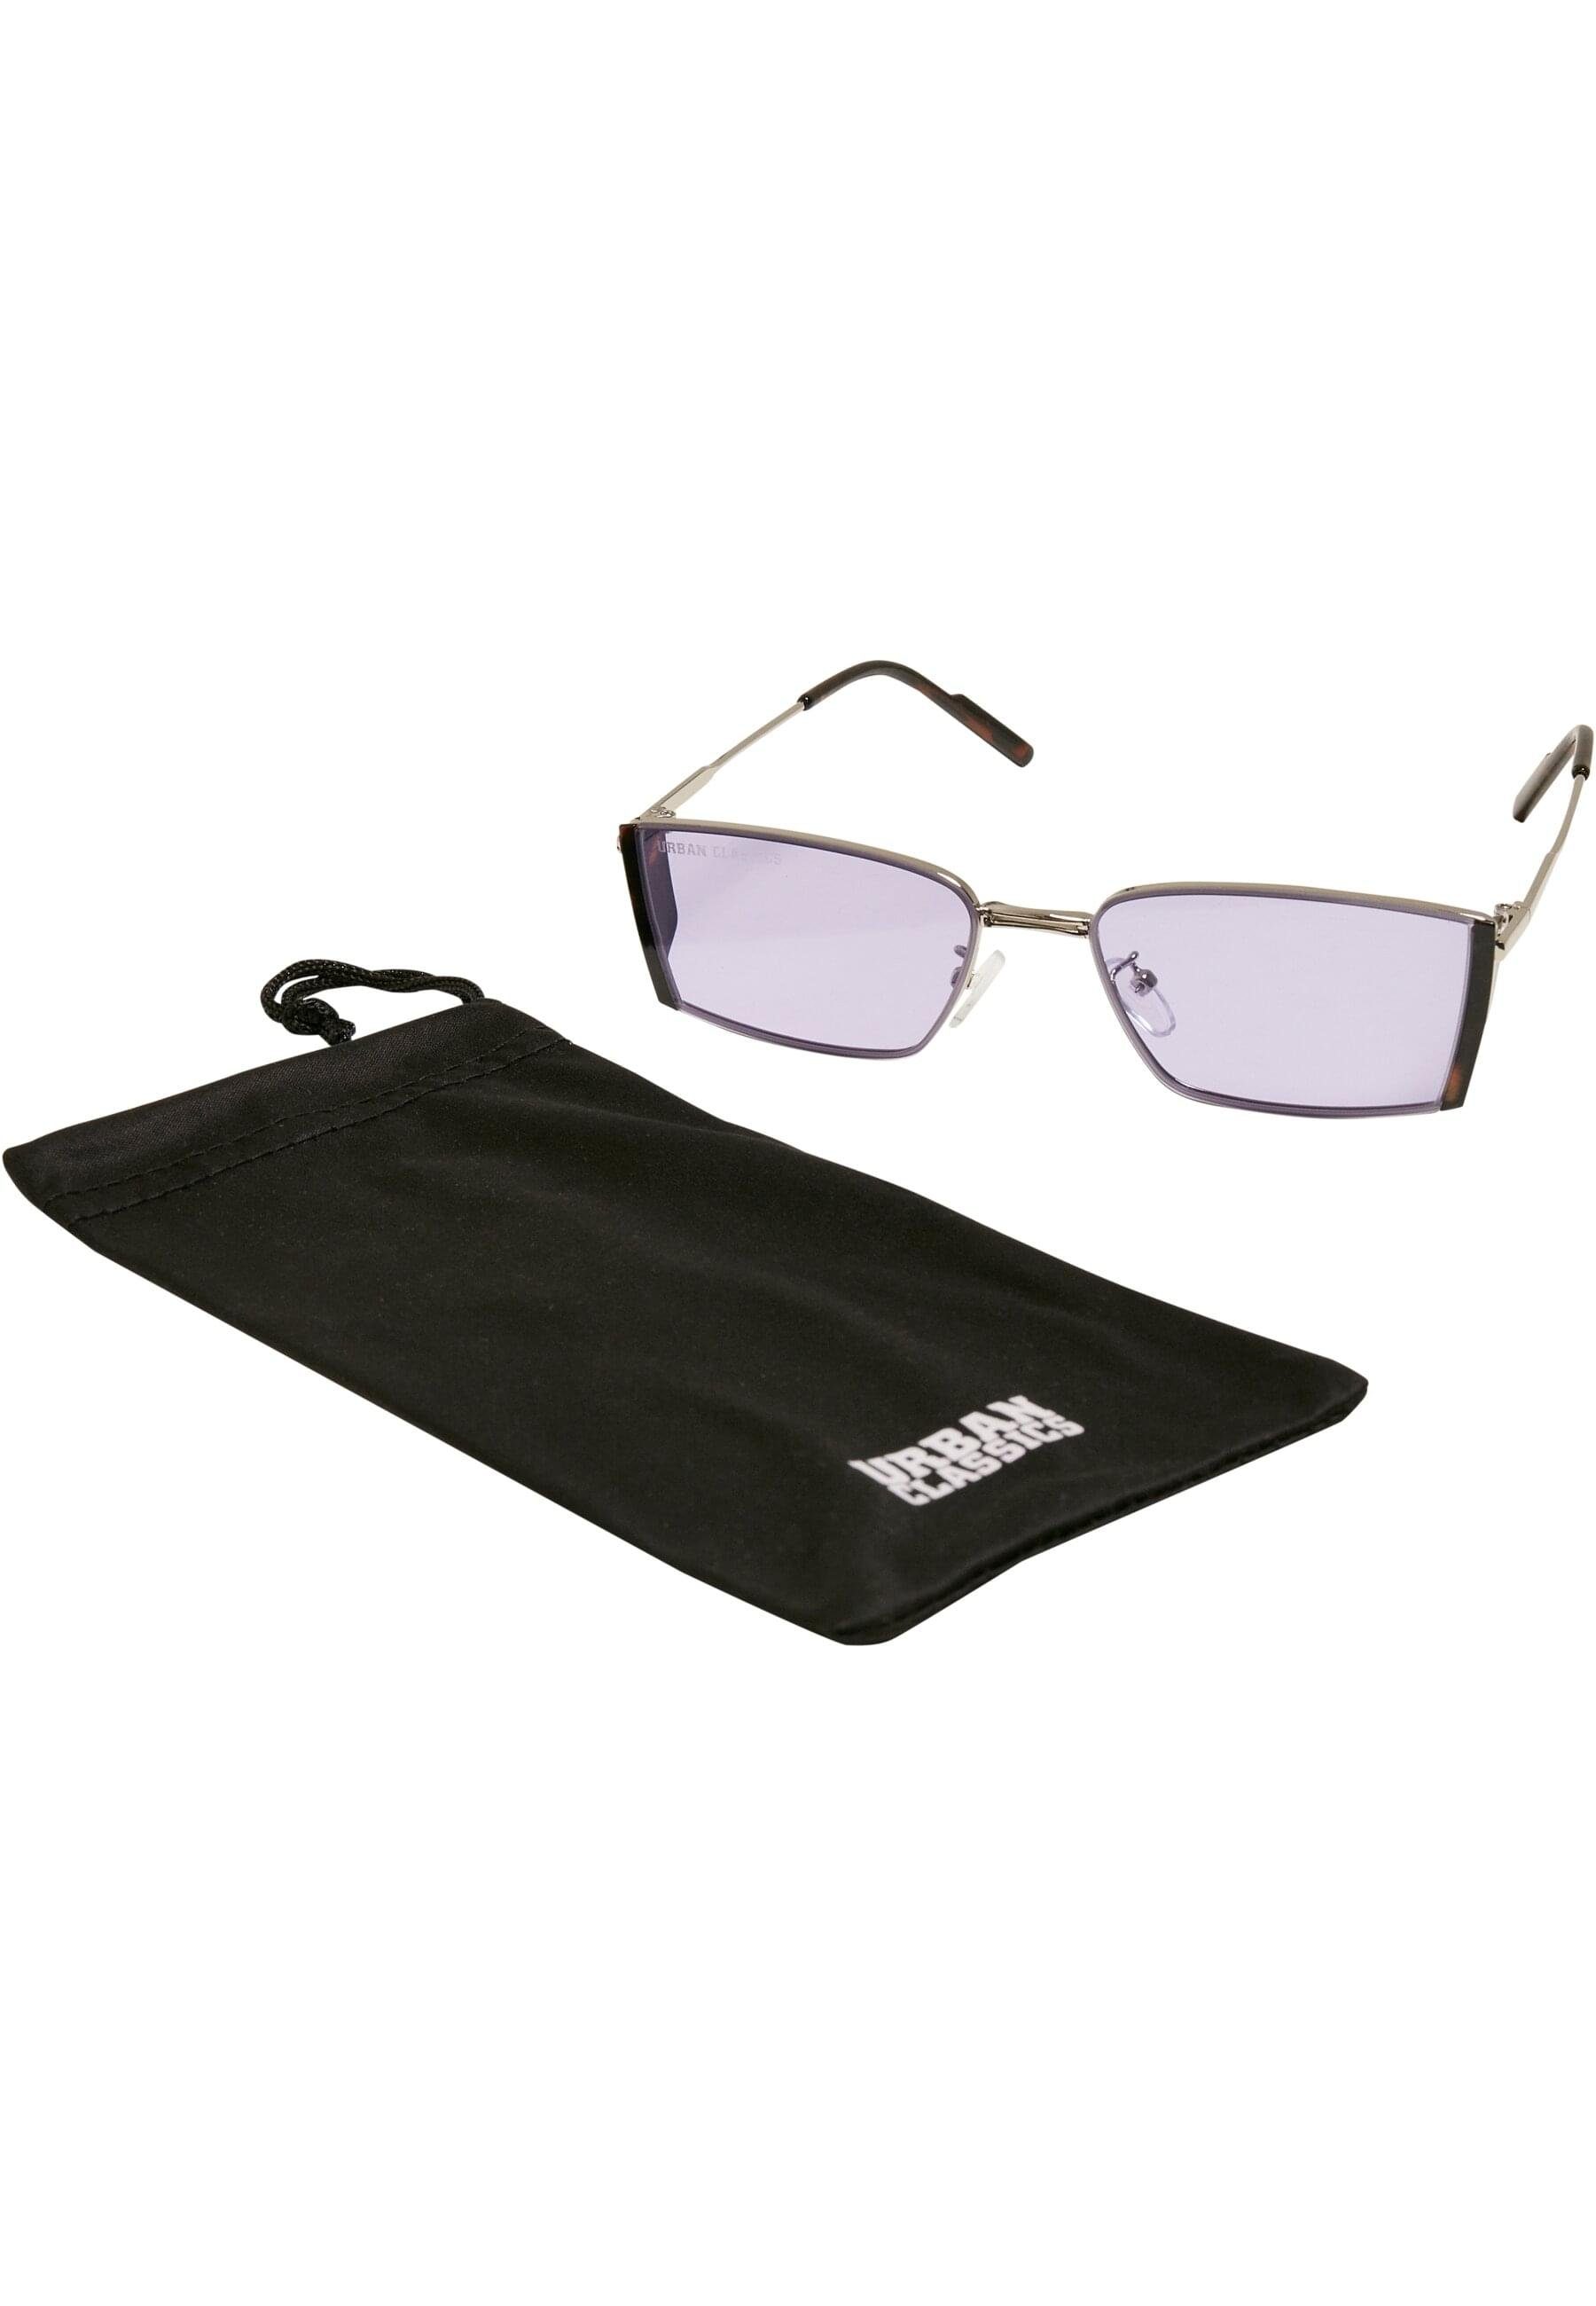 URBAN CLASSICS Sonnenbrille Urban Classics Unisex Sunglasses Ohio